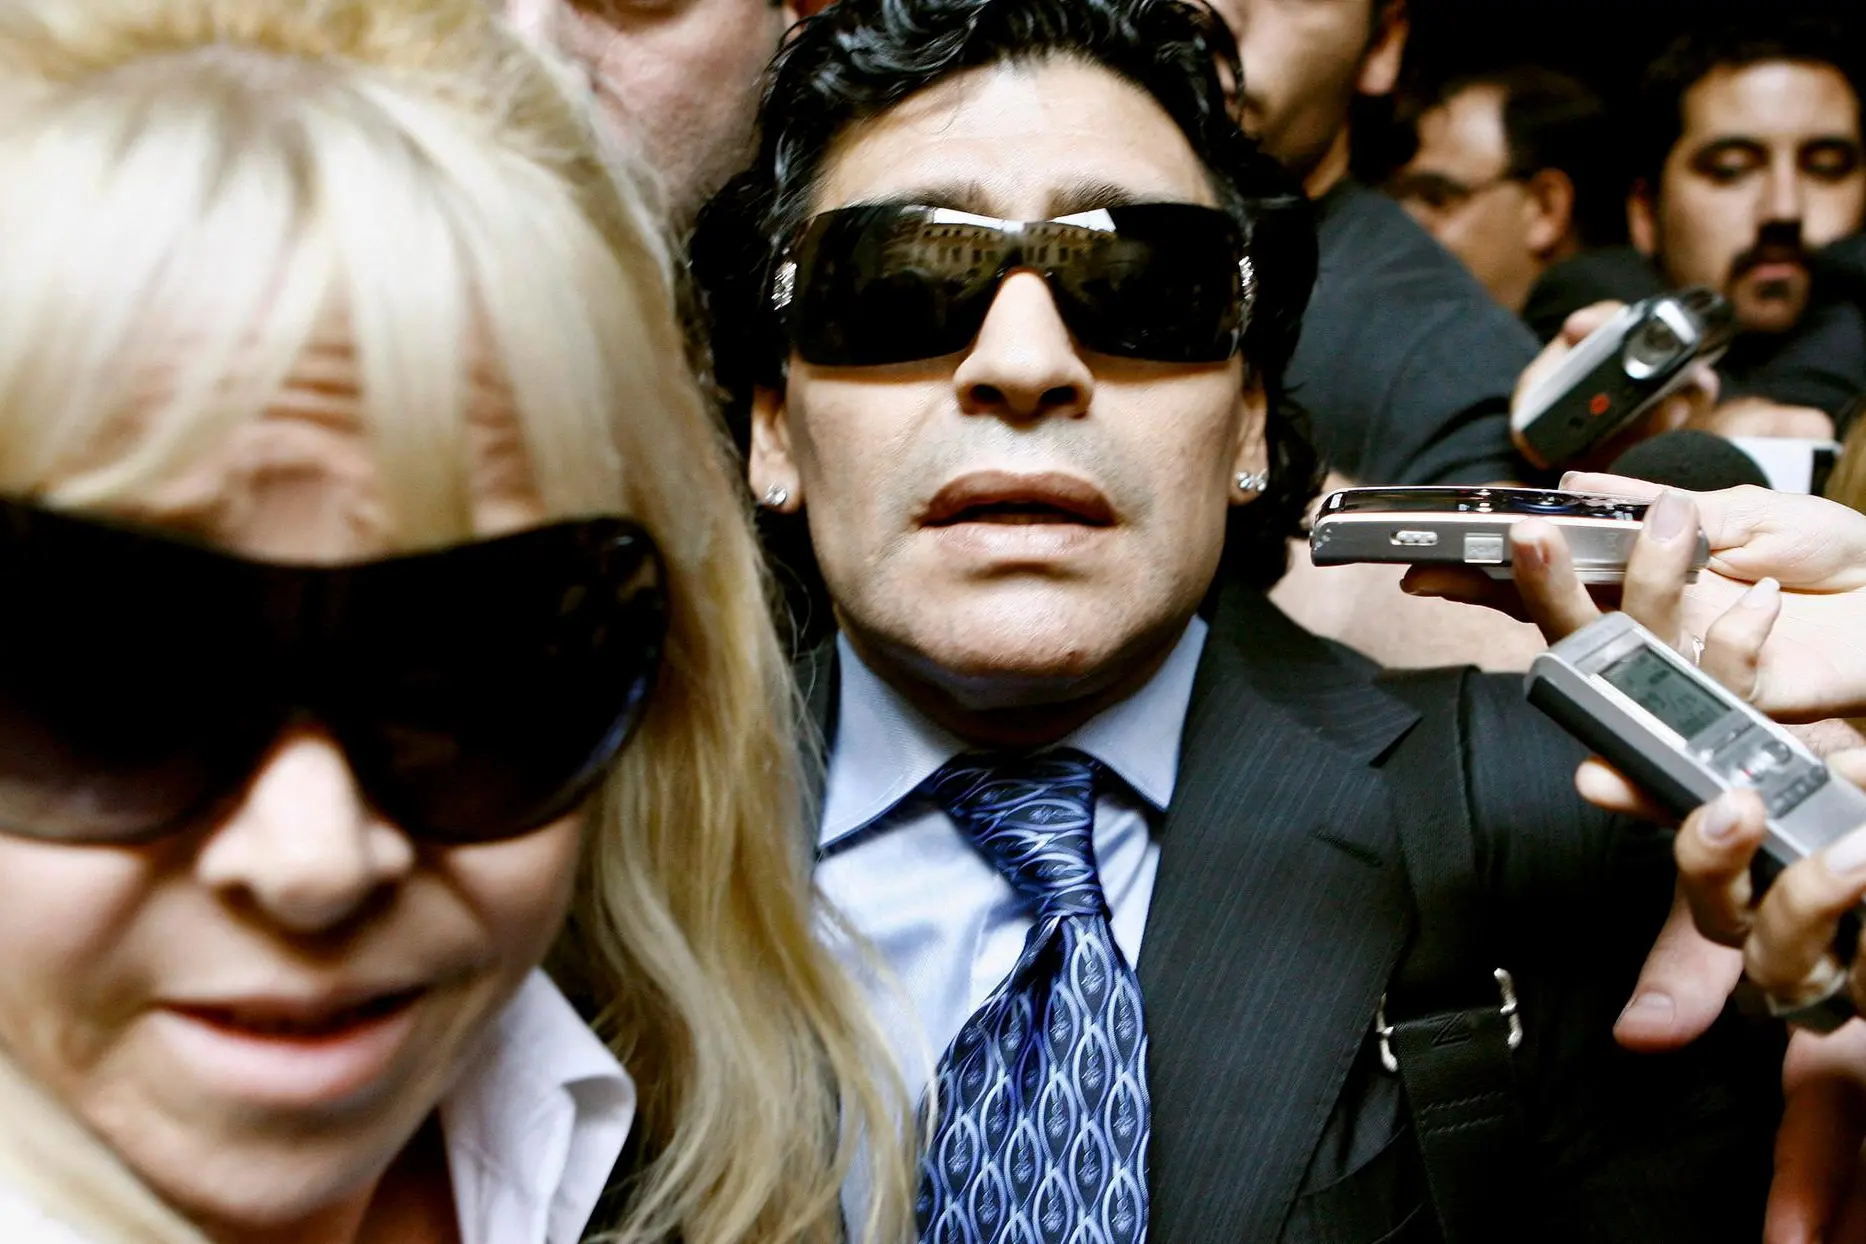 迭戈·马拉多纳 (Diego Maradona) 和克劳迪娅·维拉法内 (Craudia Villafane) 的档案照片